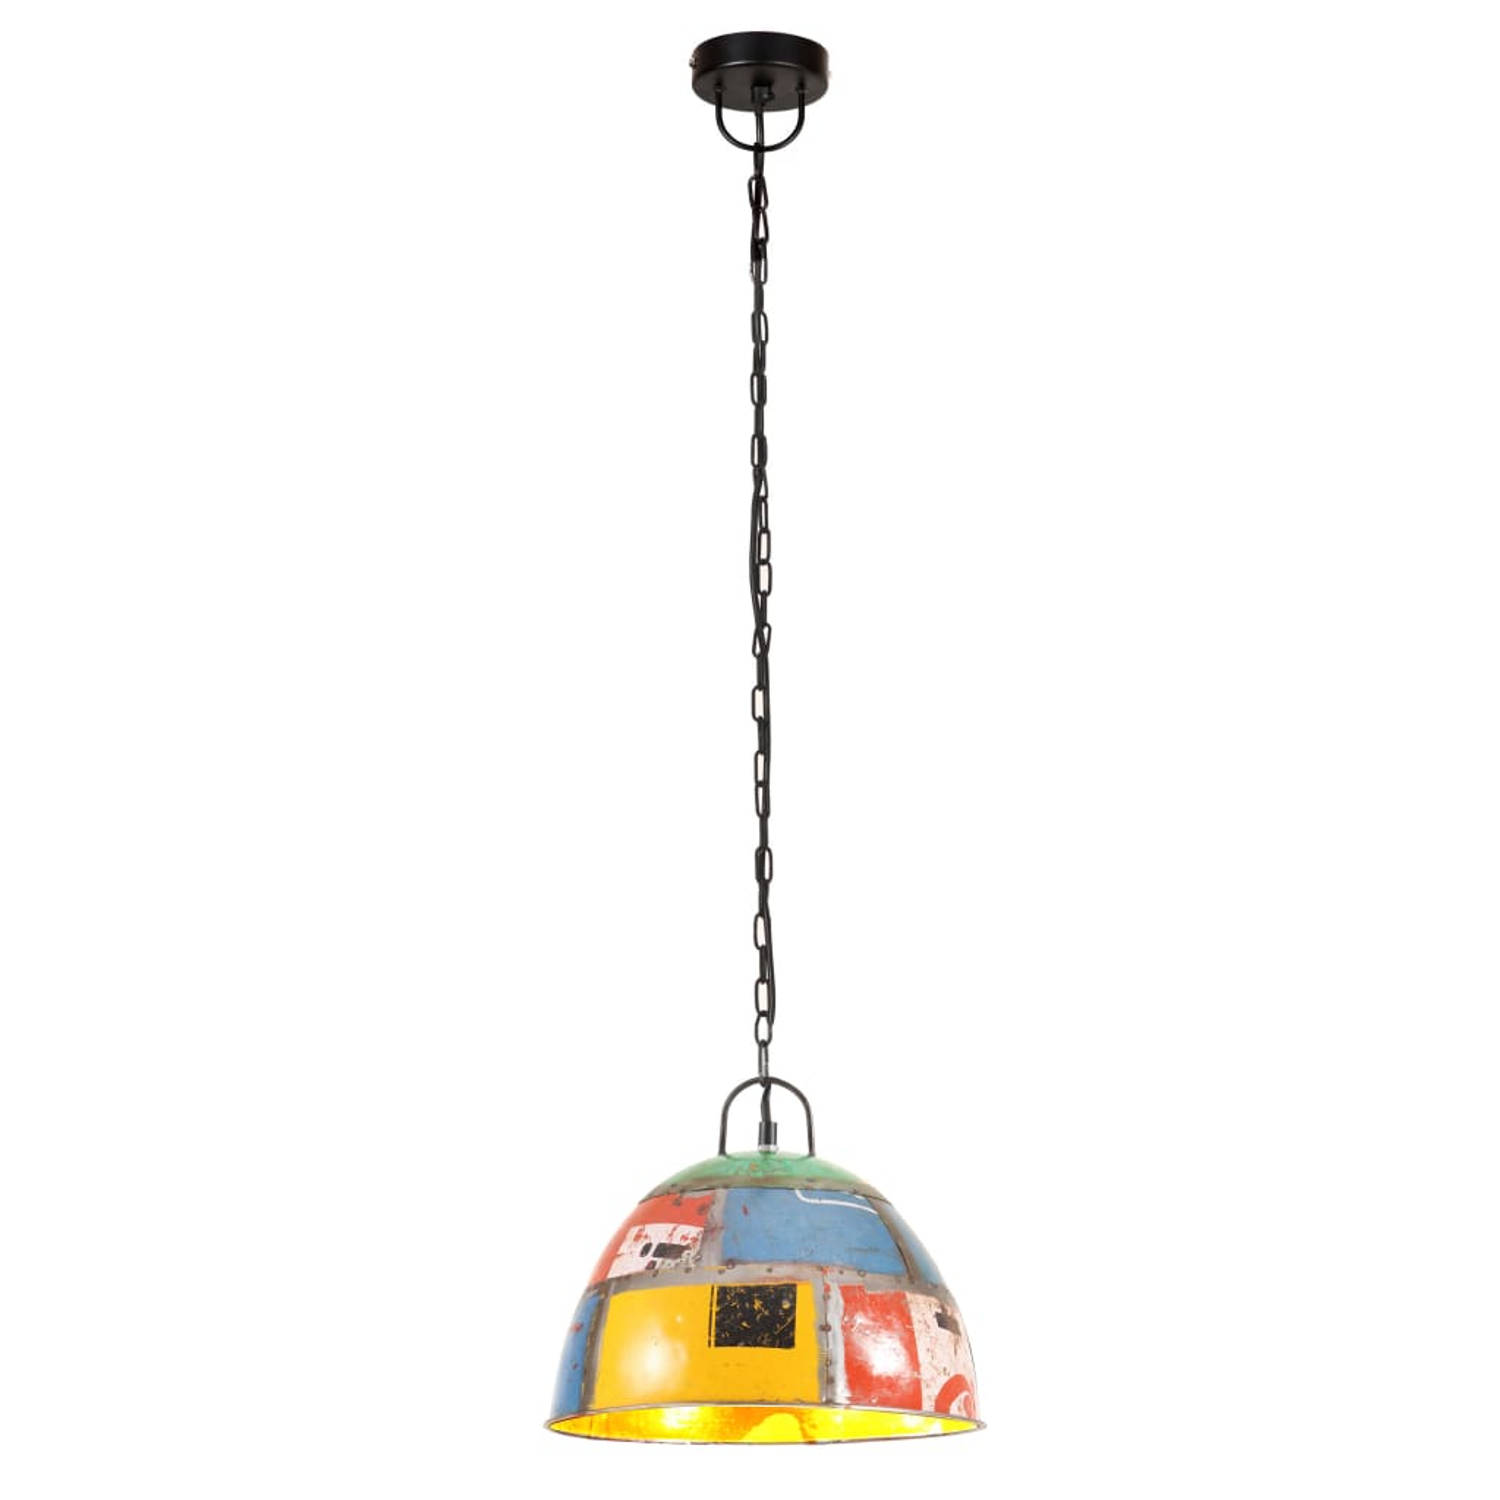 The Living Store Hanglamp Industrieel - 31x26 cm - Meerkleurig